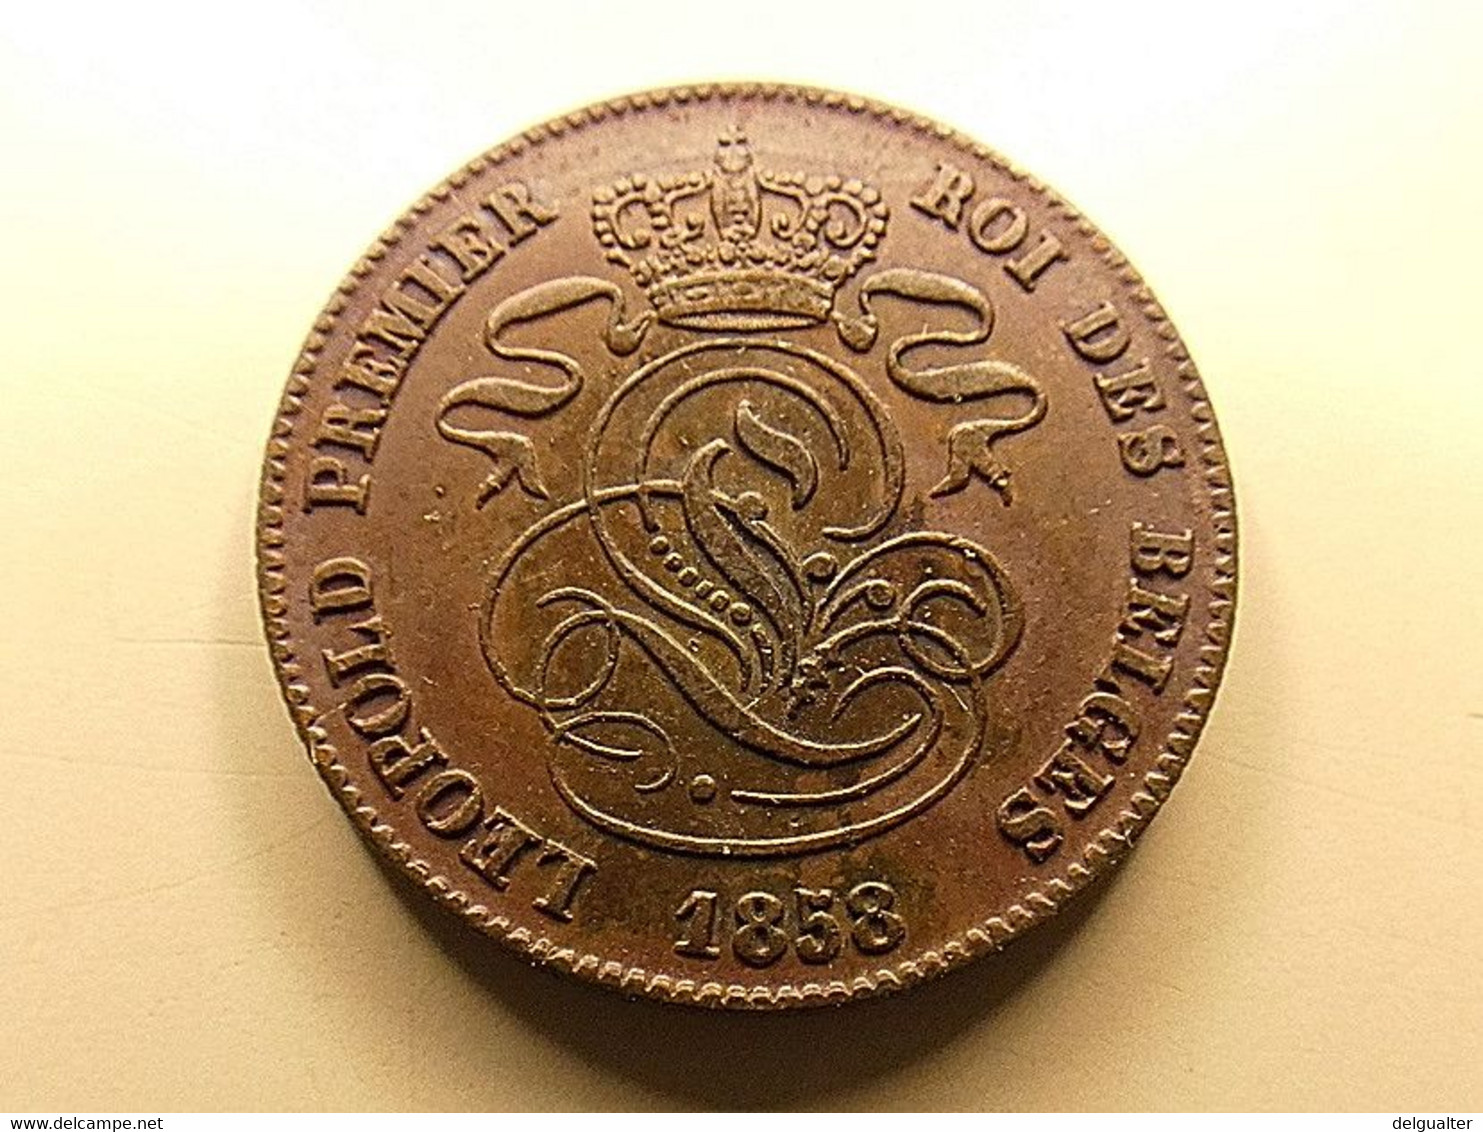 Belgium 2 Centimes 1858 - 2 Centimes